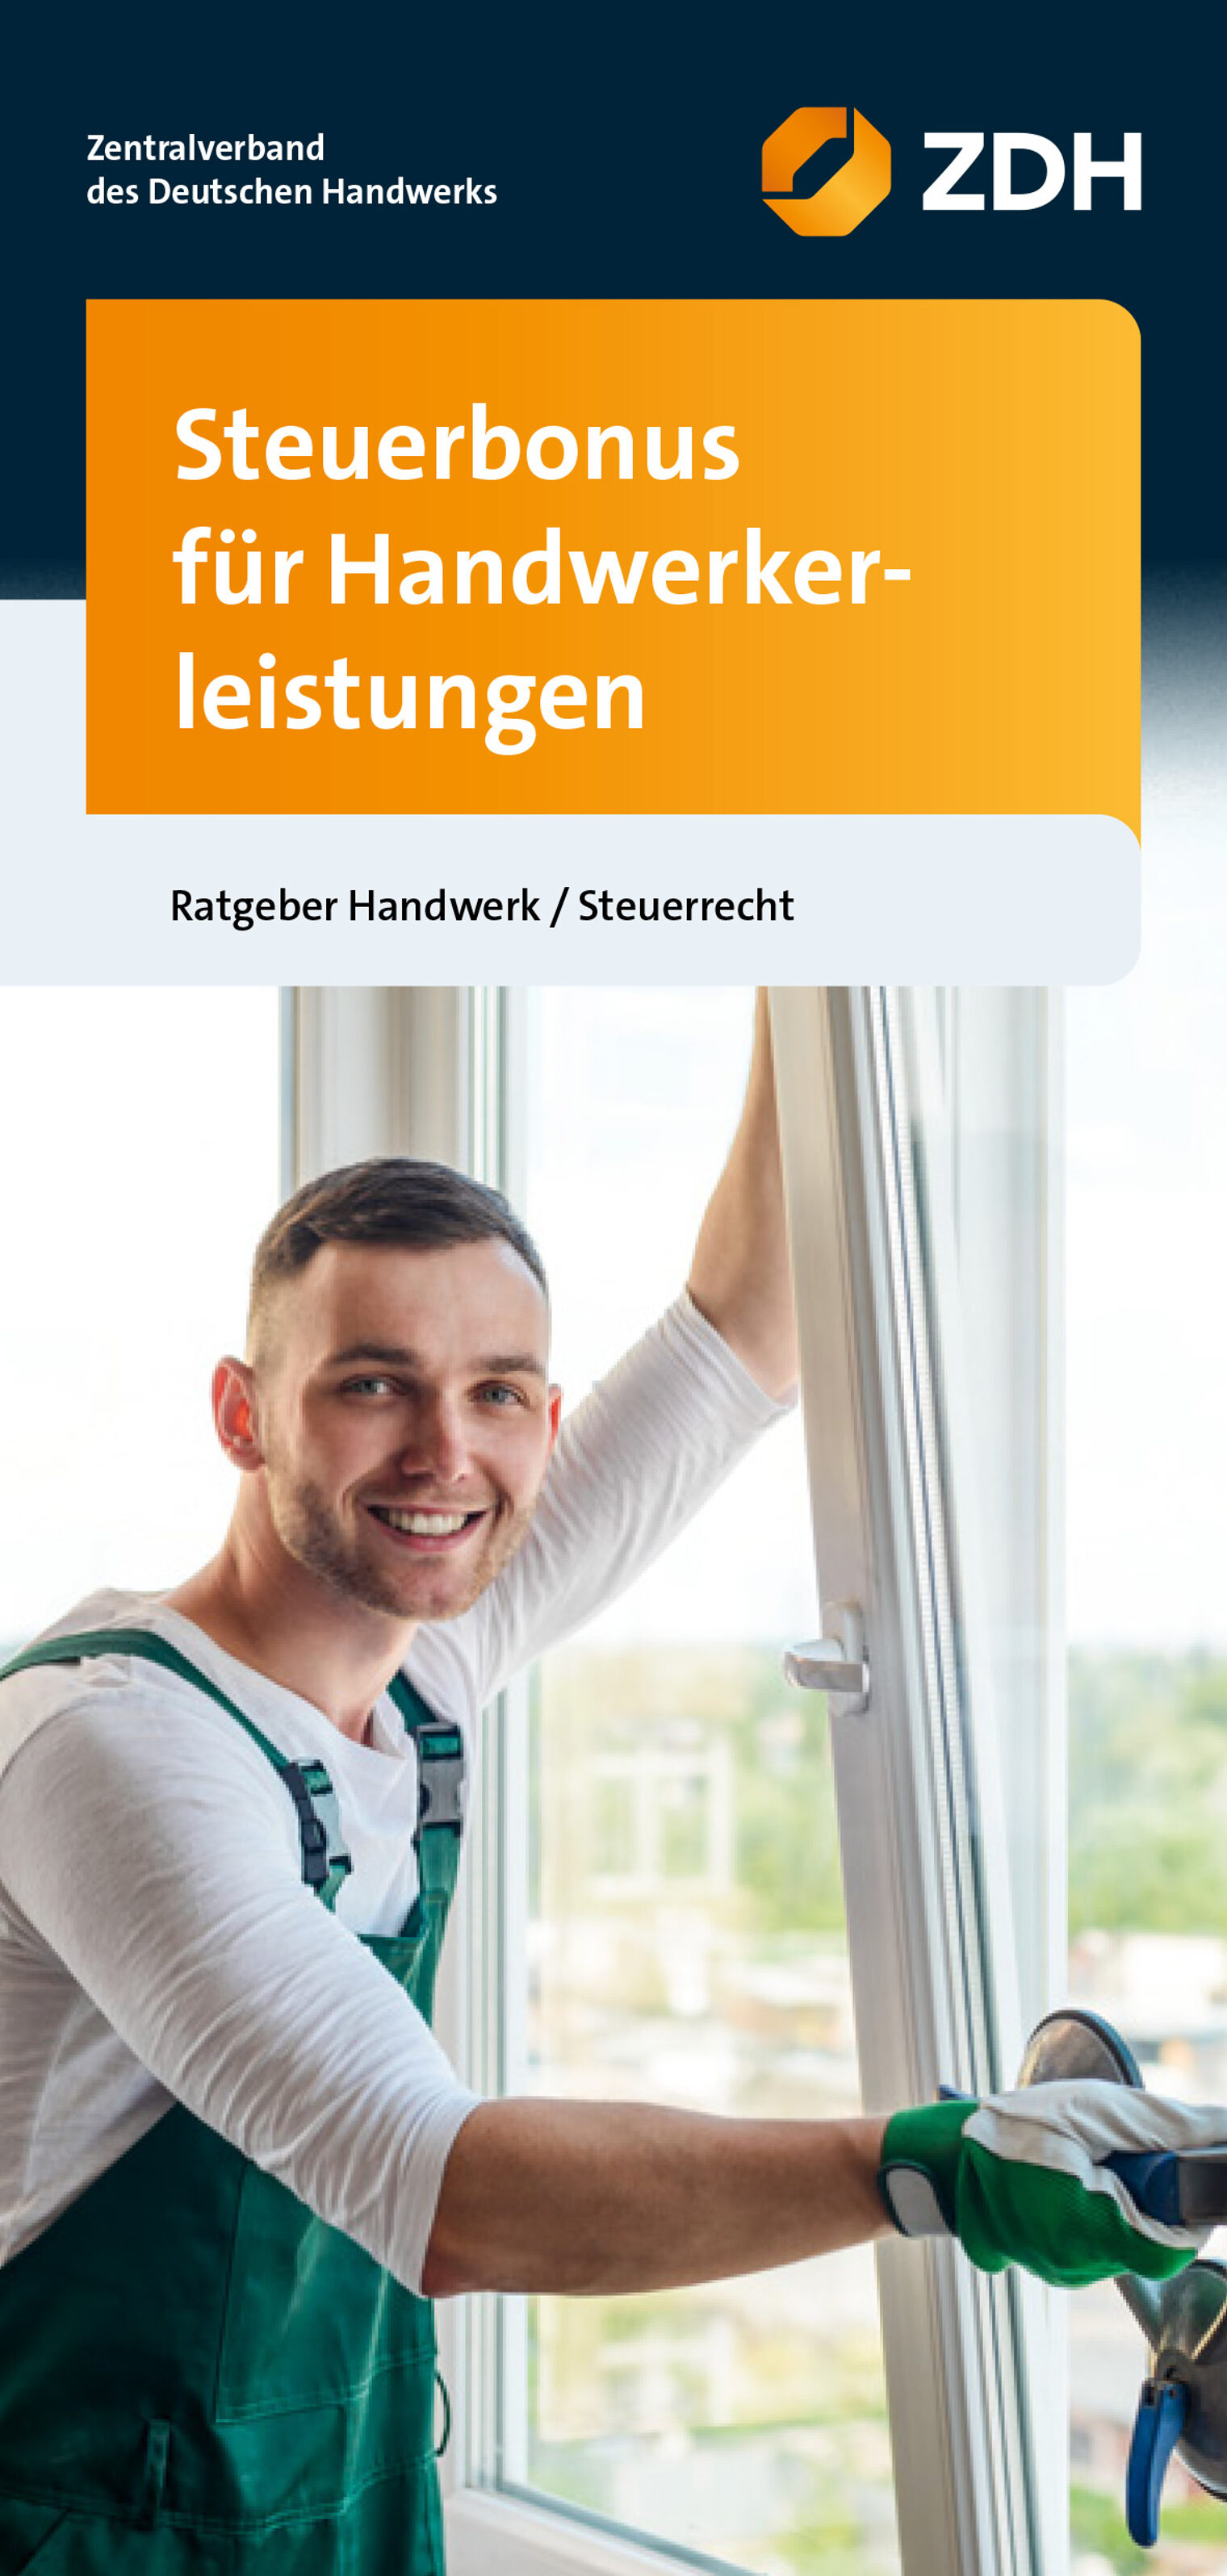 ZDH-Flyer "Steuerbonus für Handwerkerleistungen"